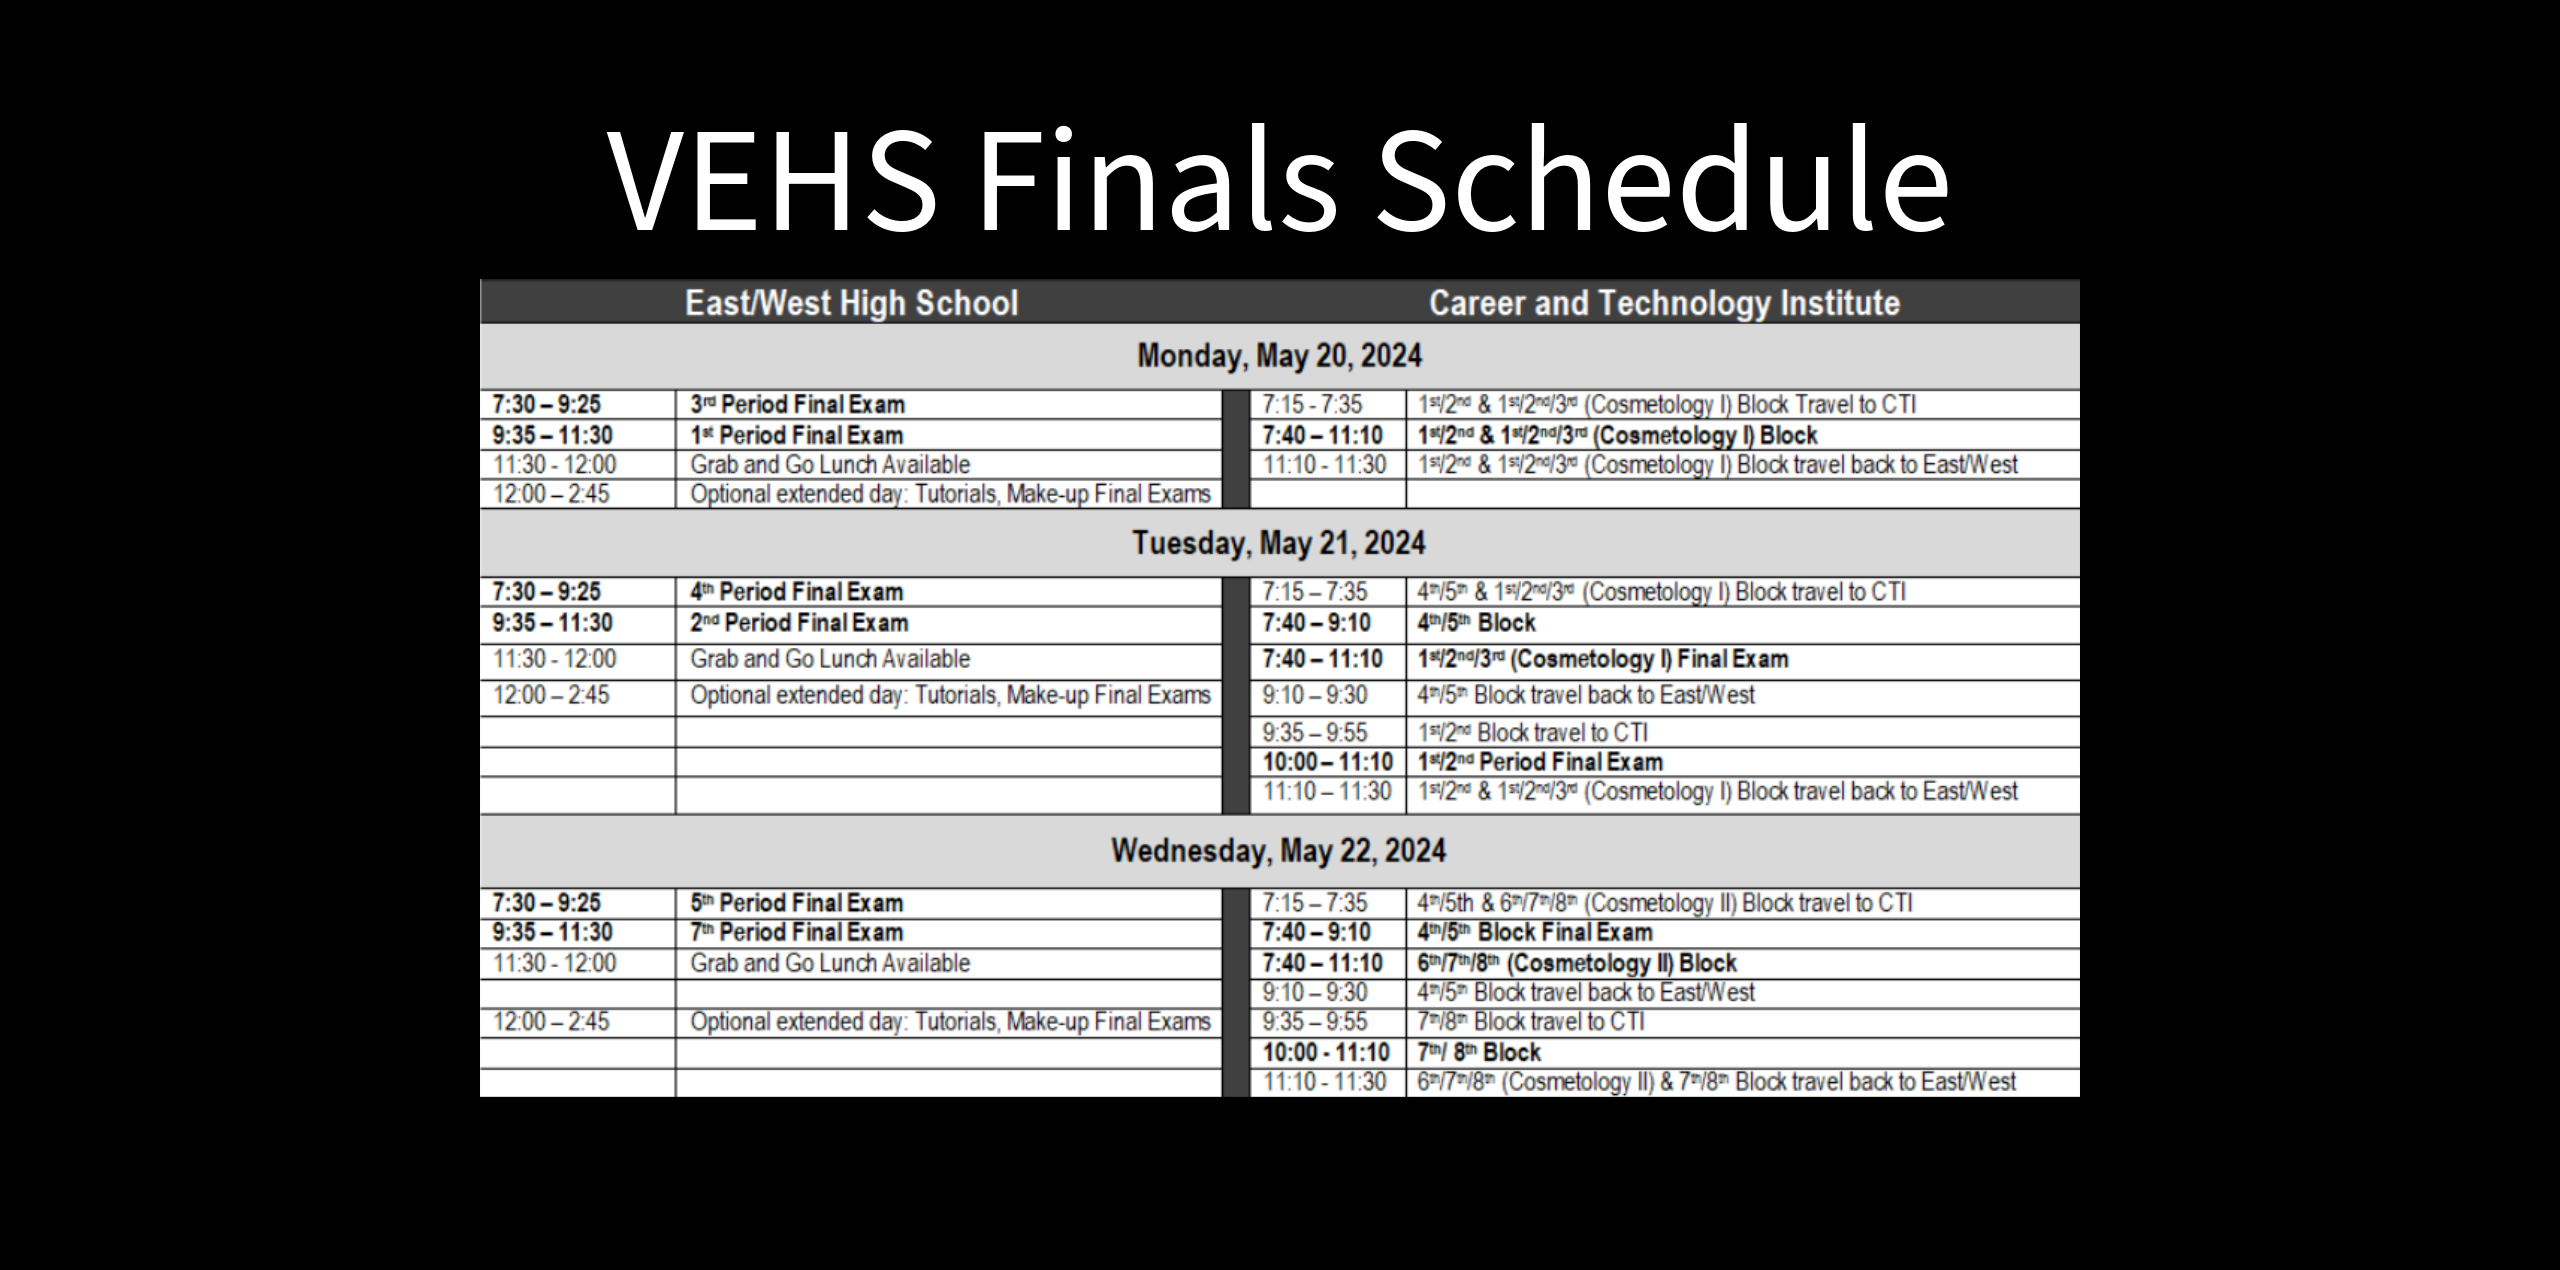 VEHS Finals Schedule